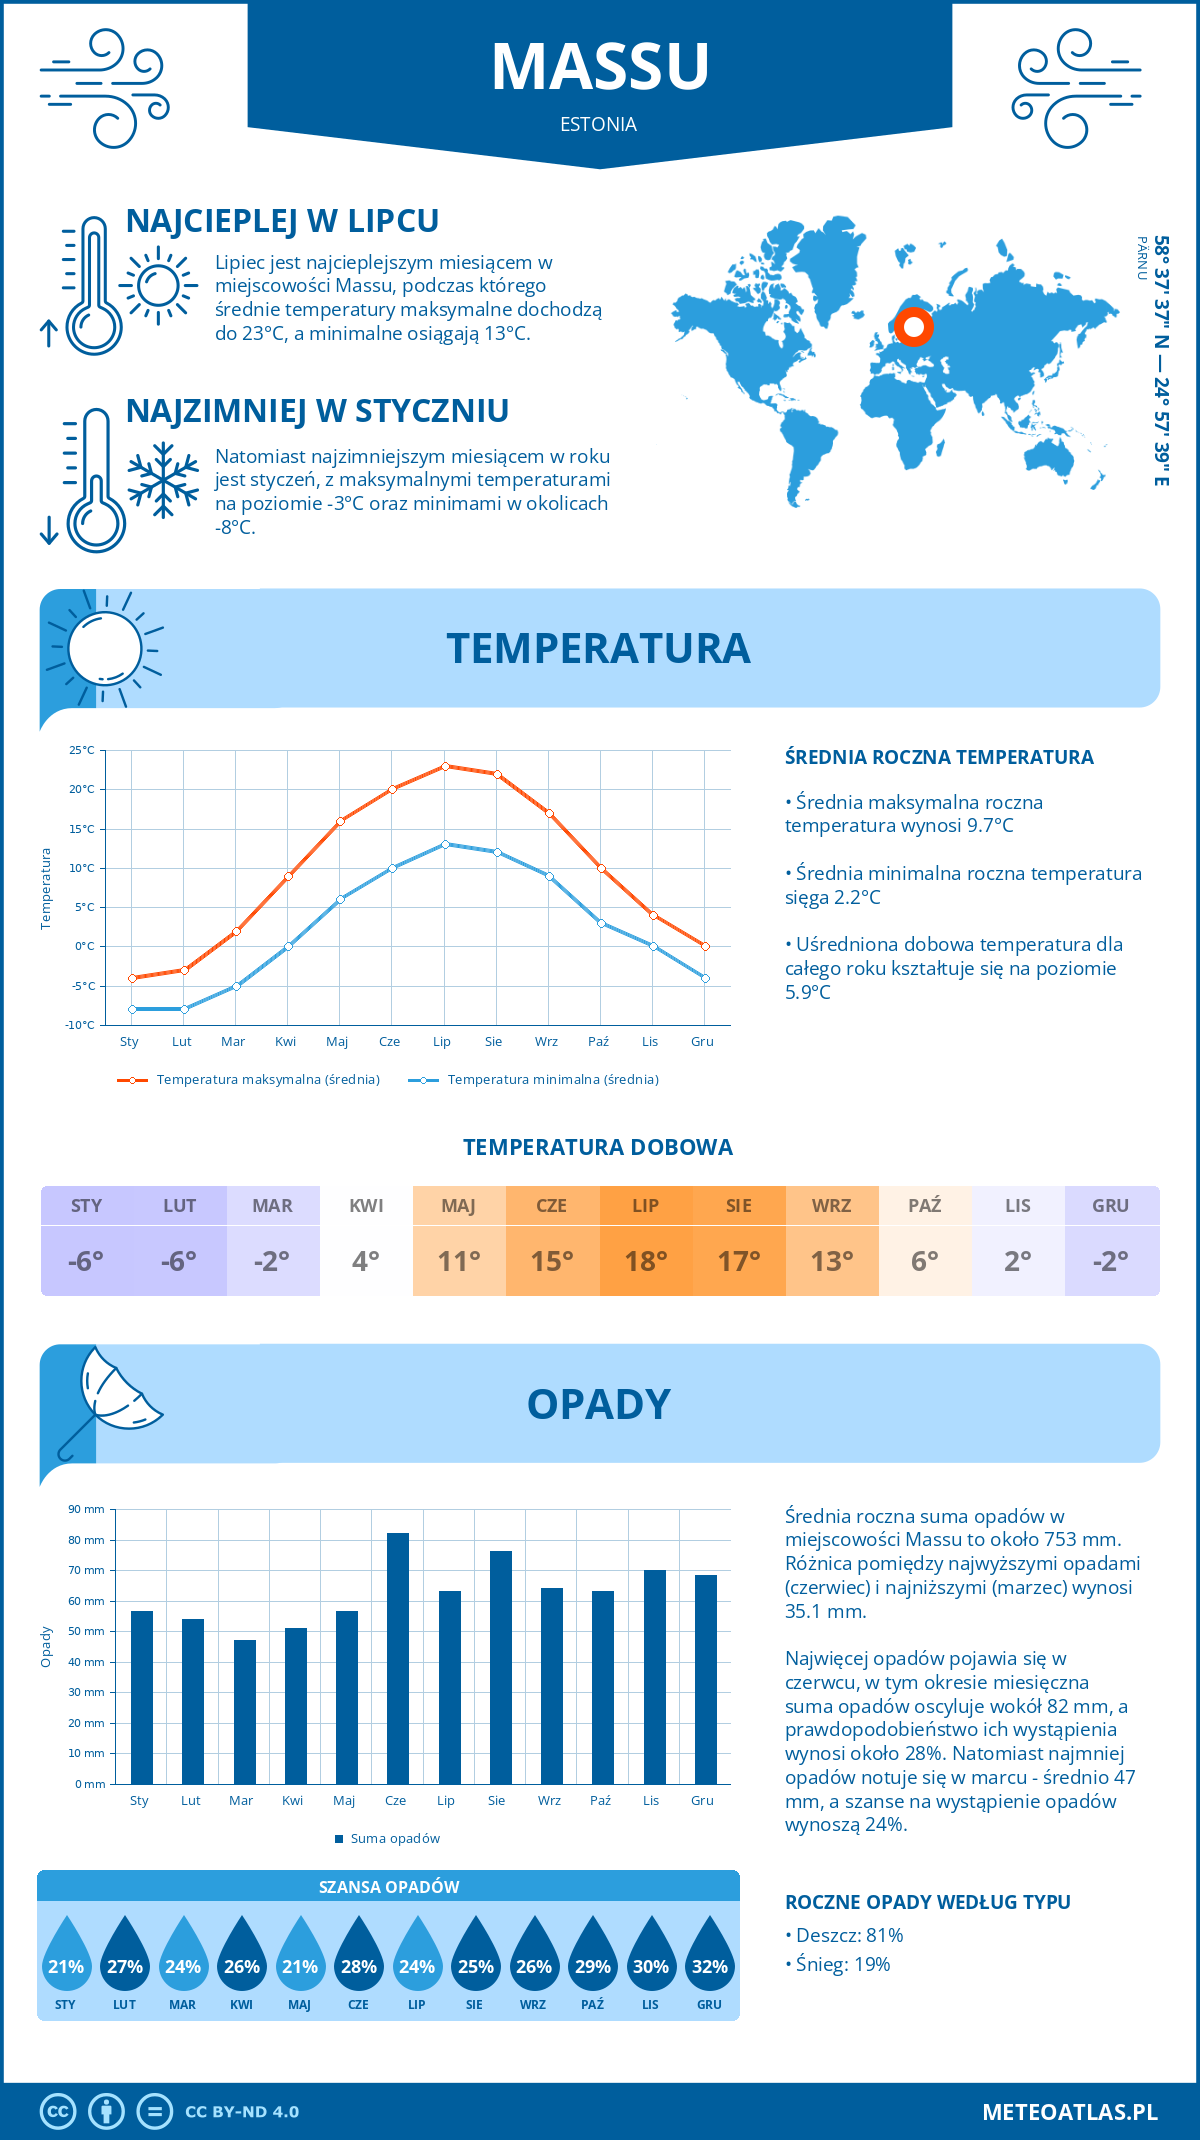 Pogoda Massu (Estonia). Temperatura oraz opady.